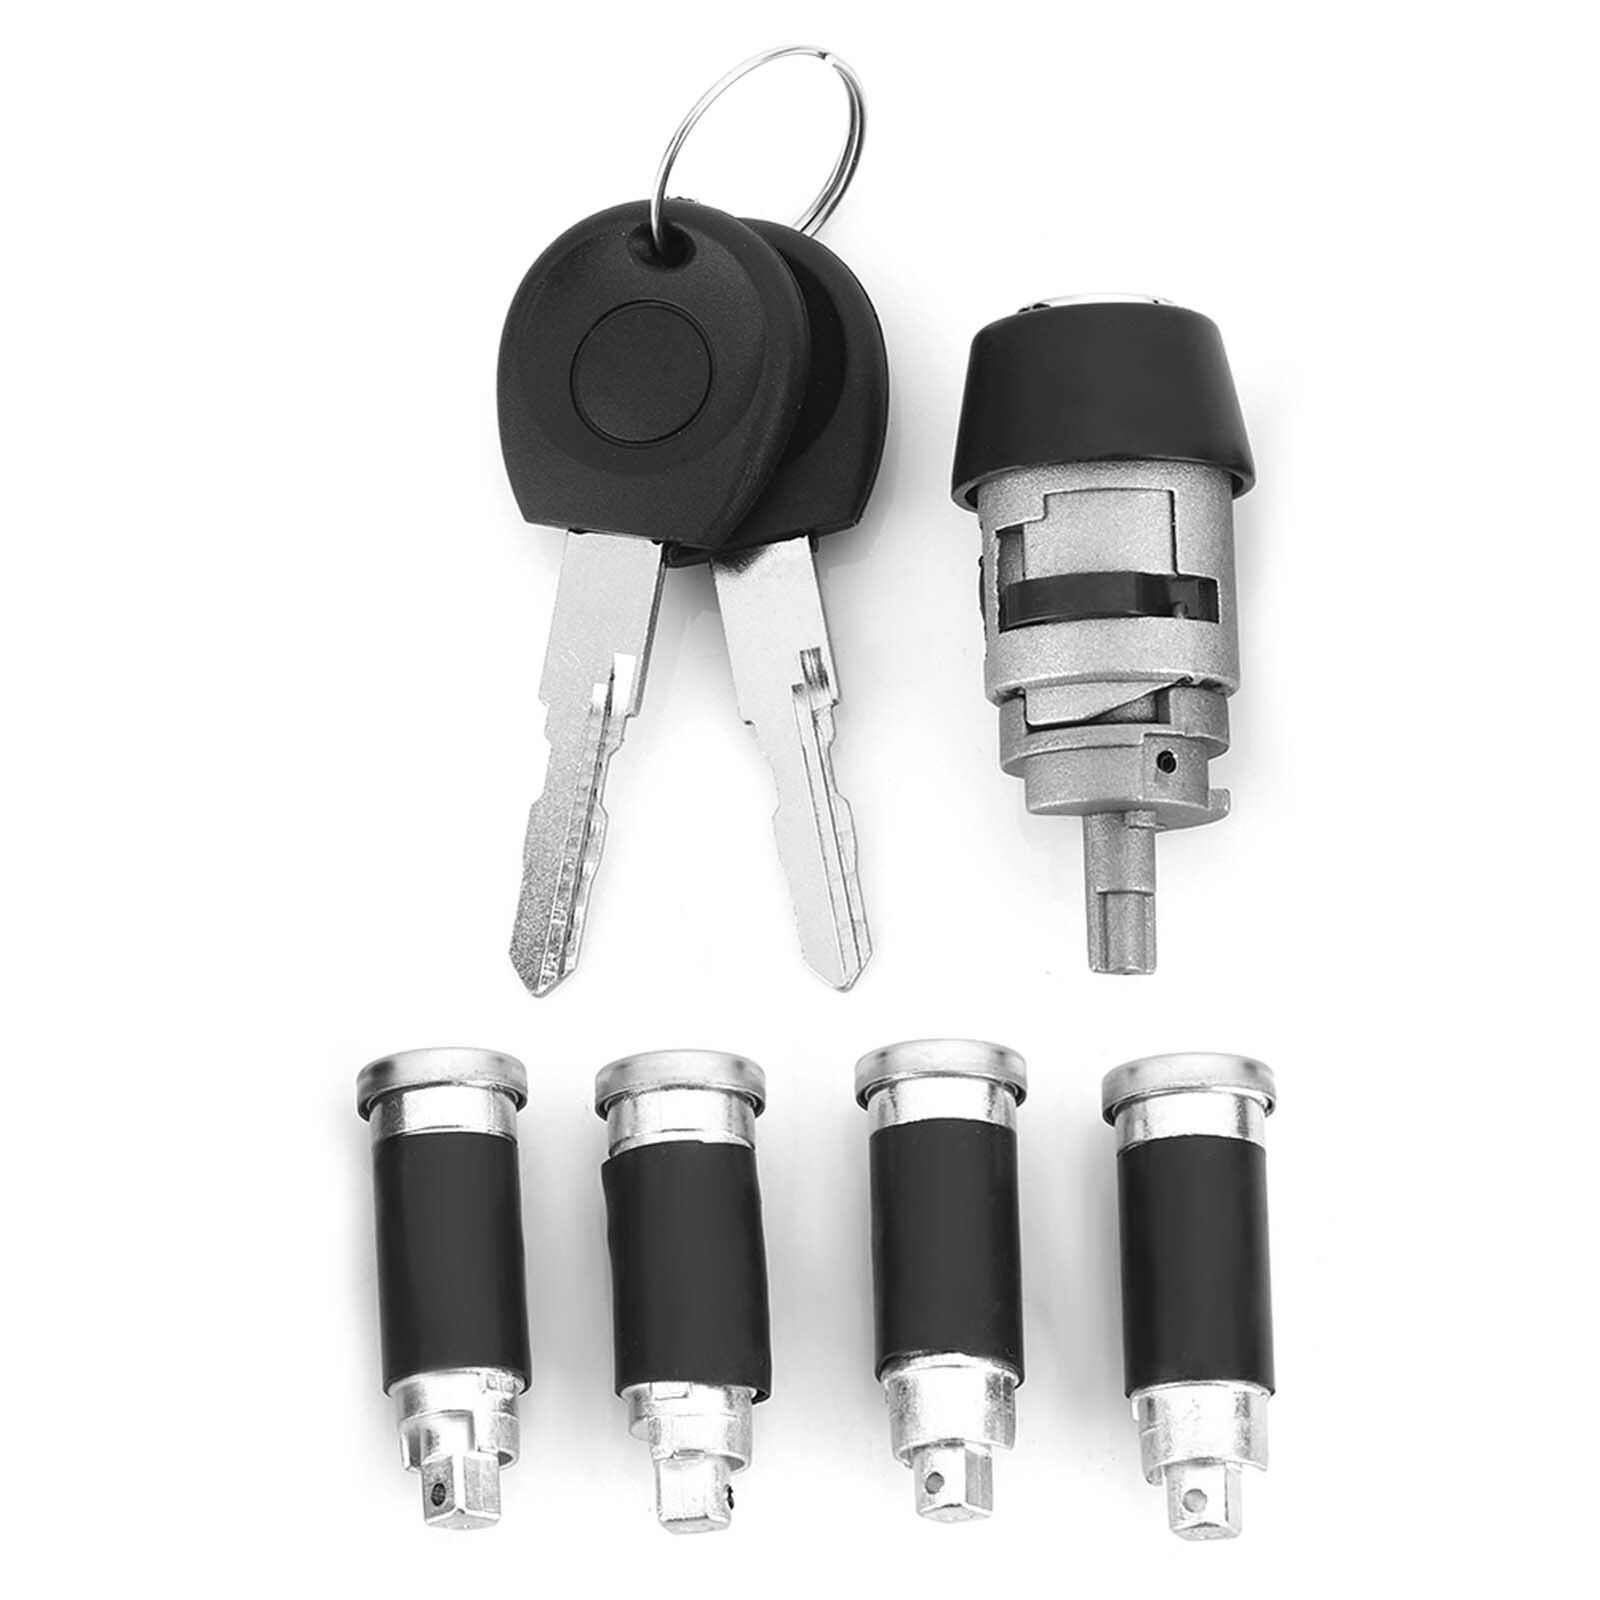 Ignition Lock Cylinder & Key For Transporter T4 Caravelle 1990-2003 357905855A⁺